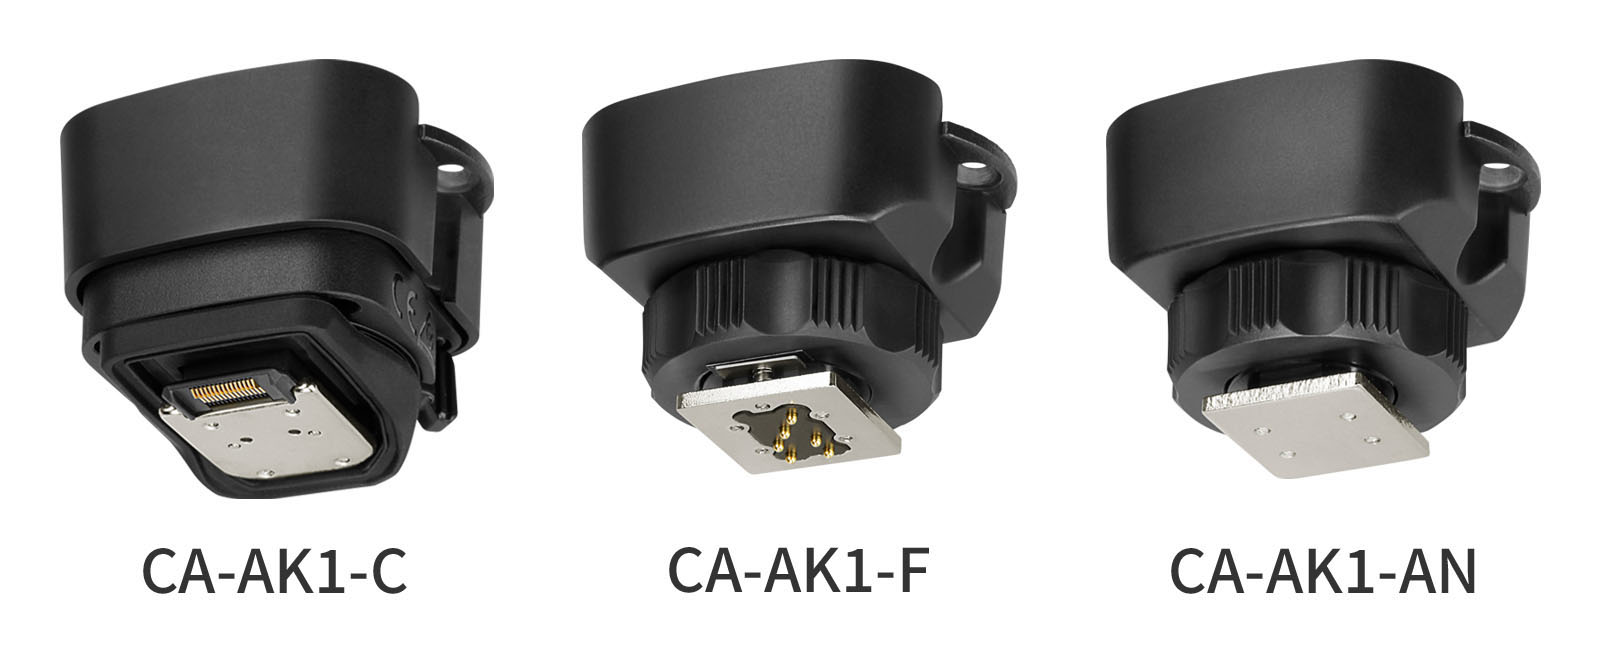 TASCAM anuncia los adaptadores de conversión CA-AK1 para la serie CA-XLR2d